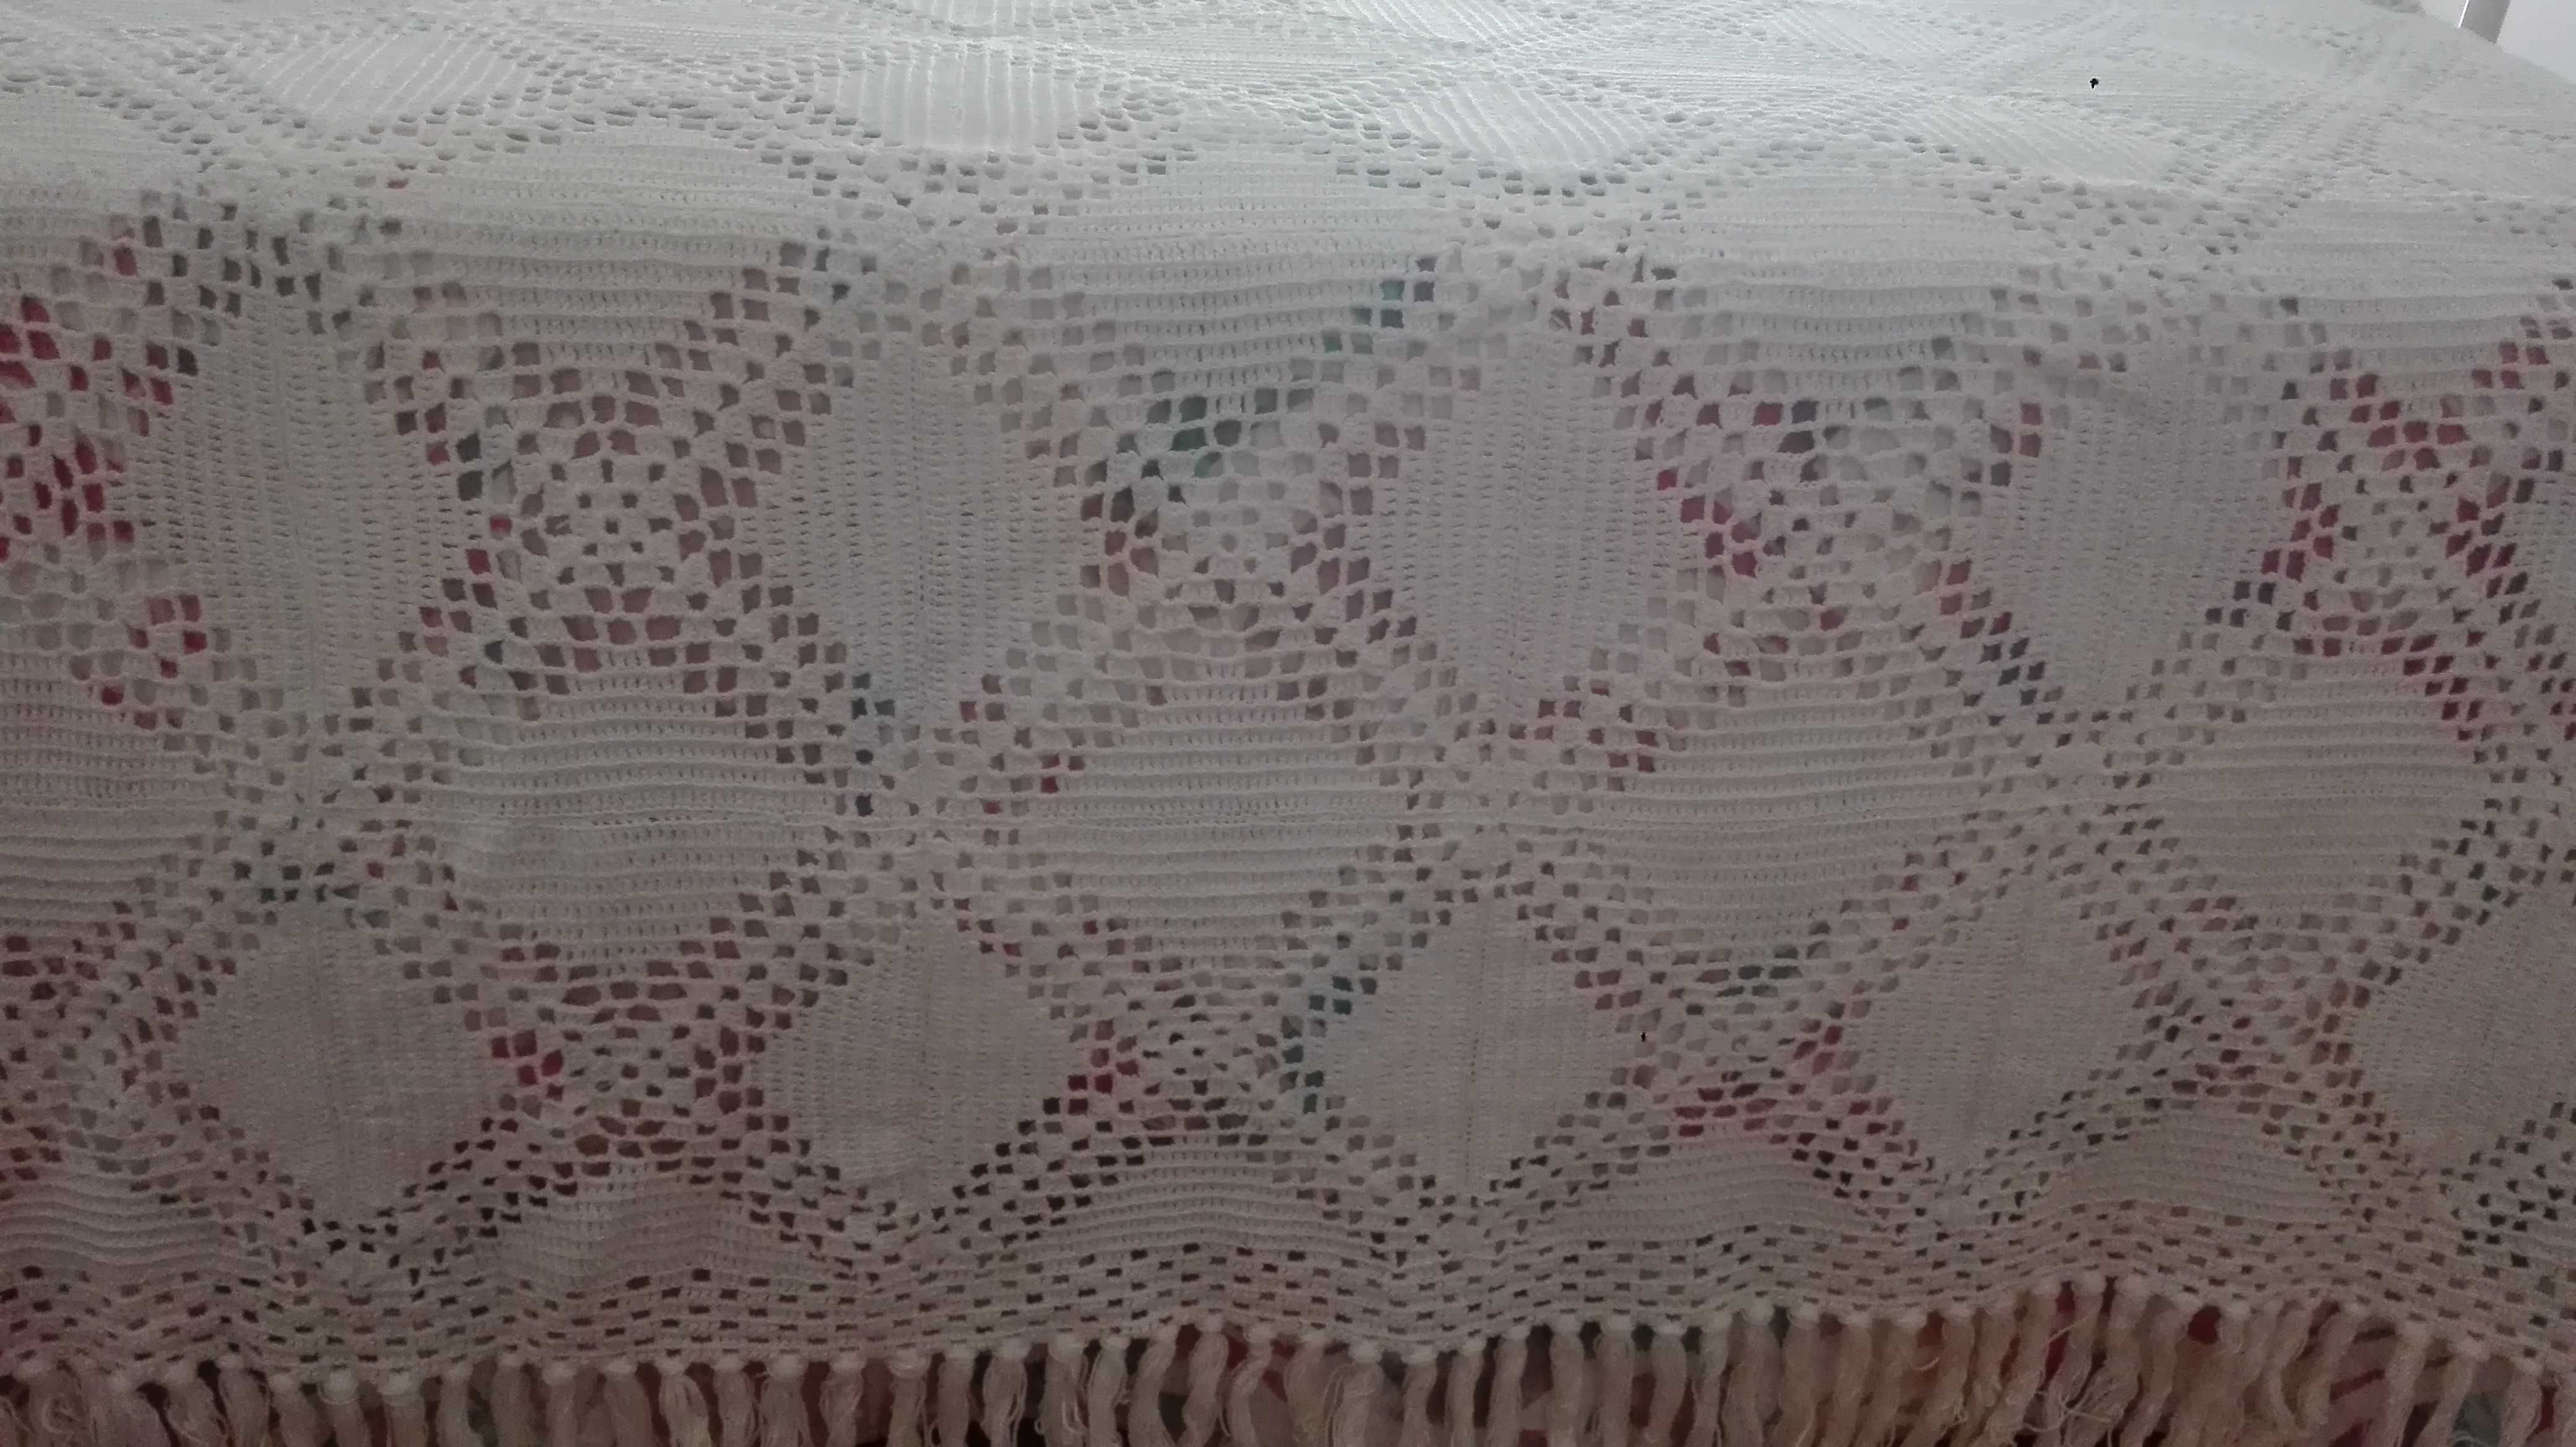 Coberta de cama em crochê feita à mão